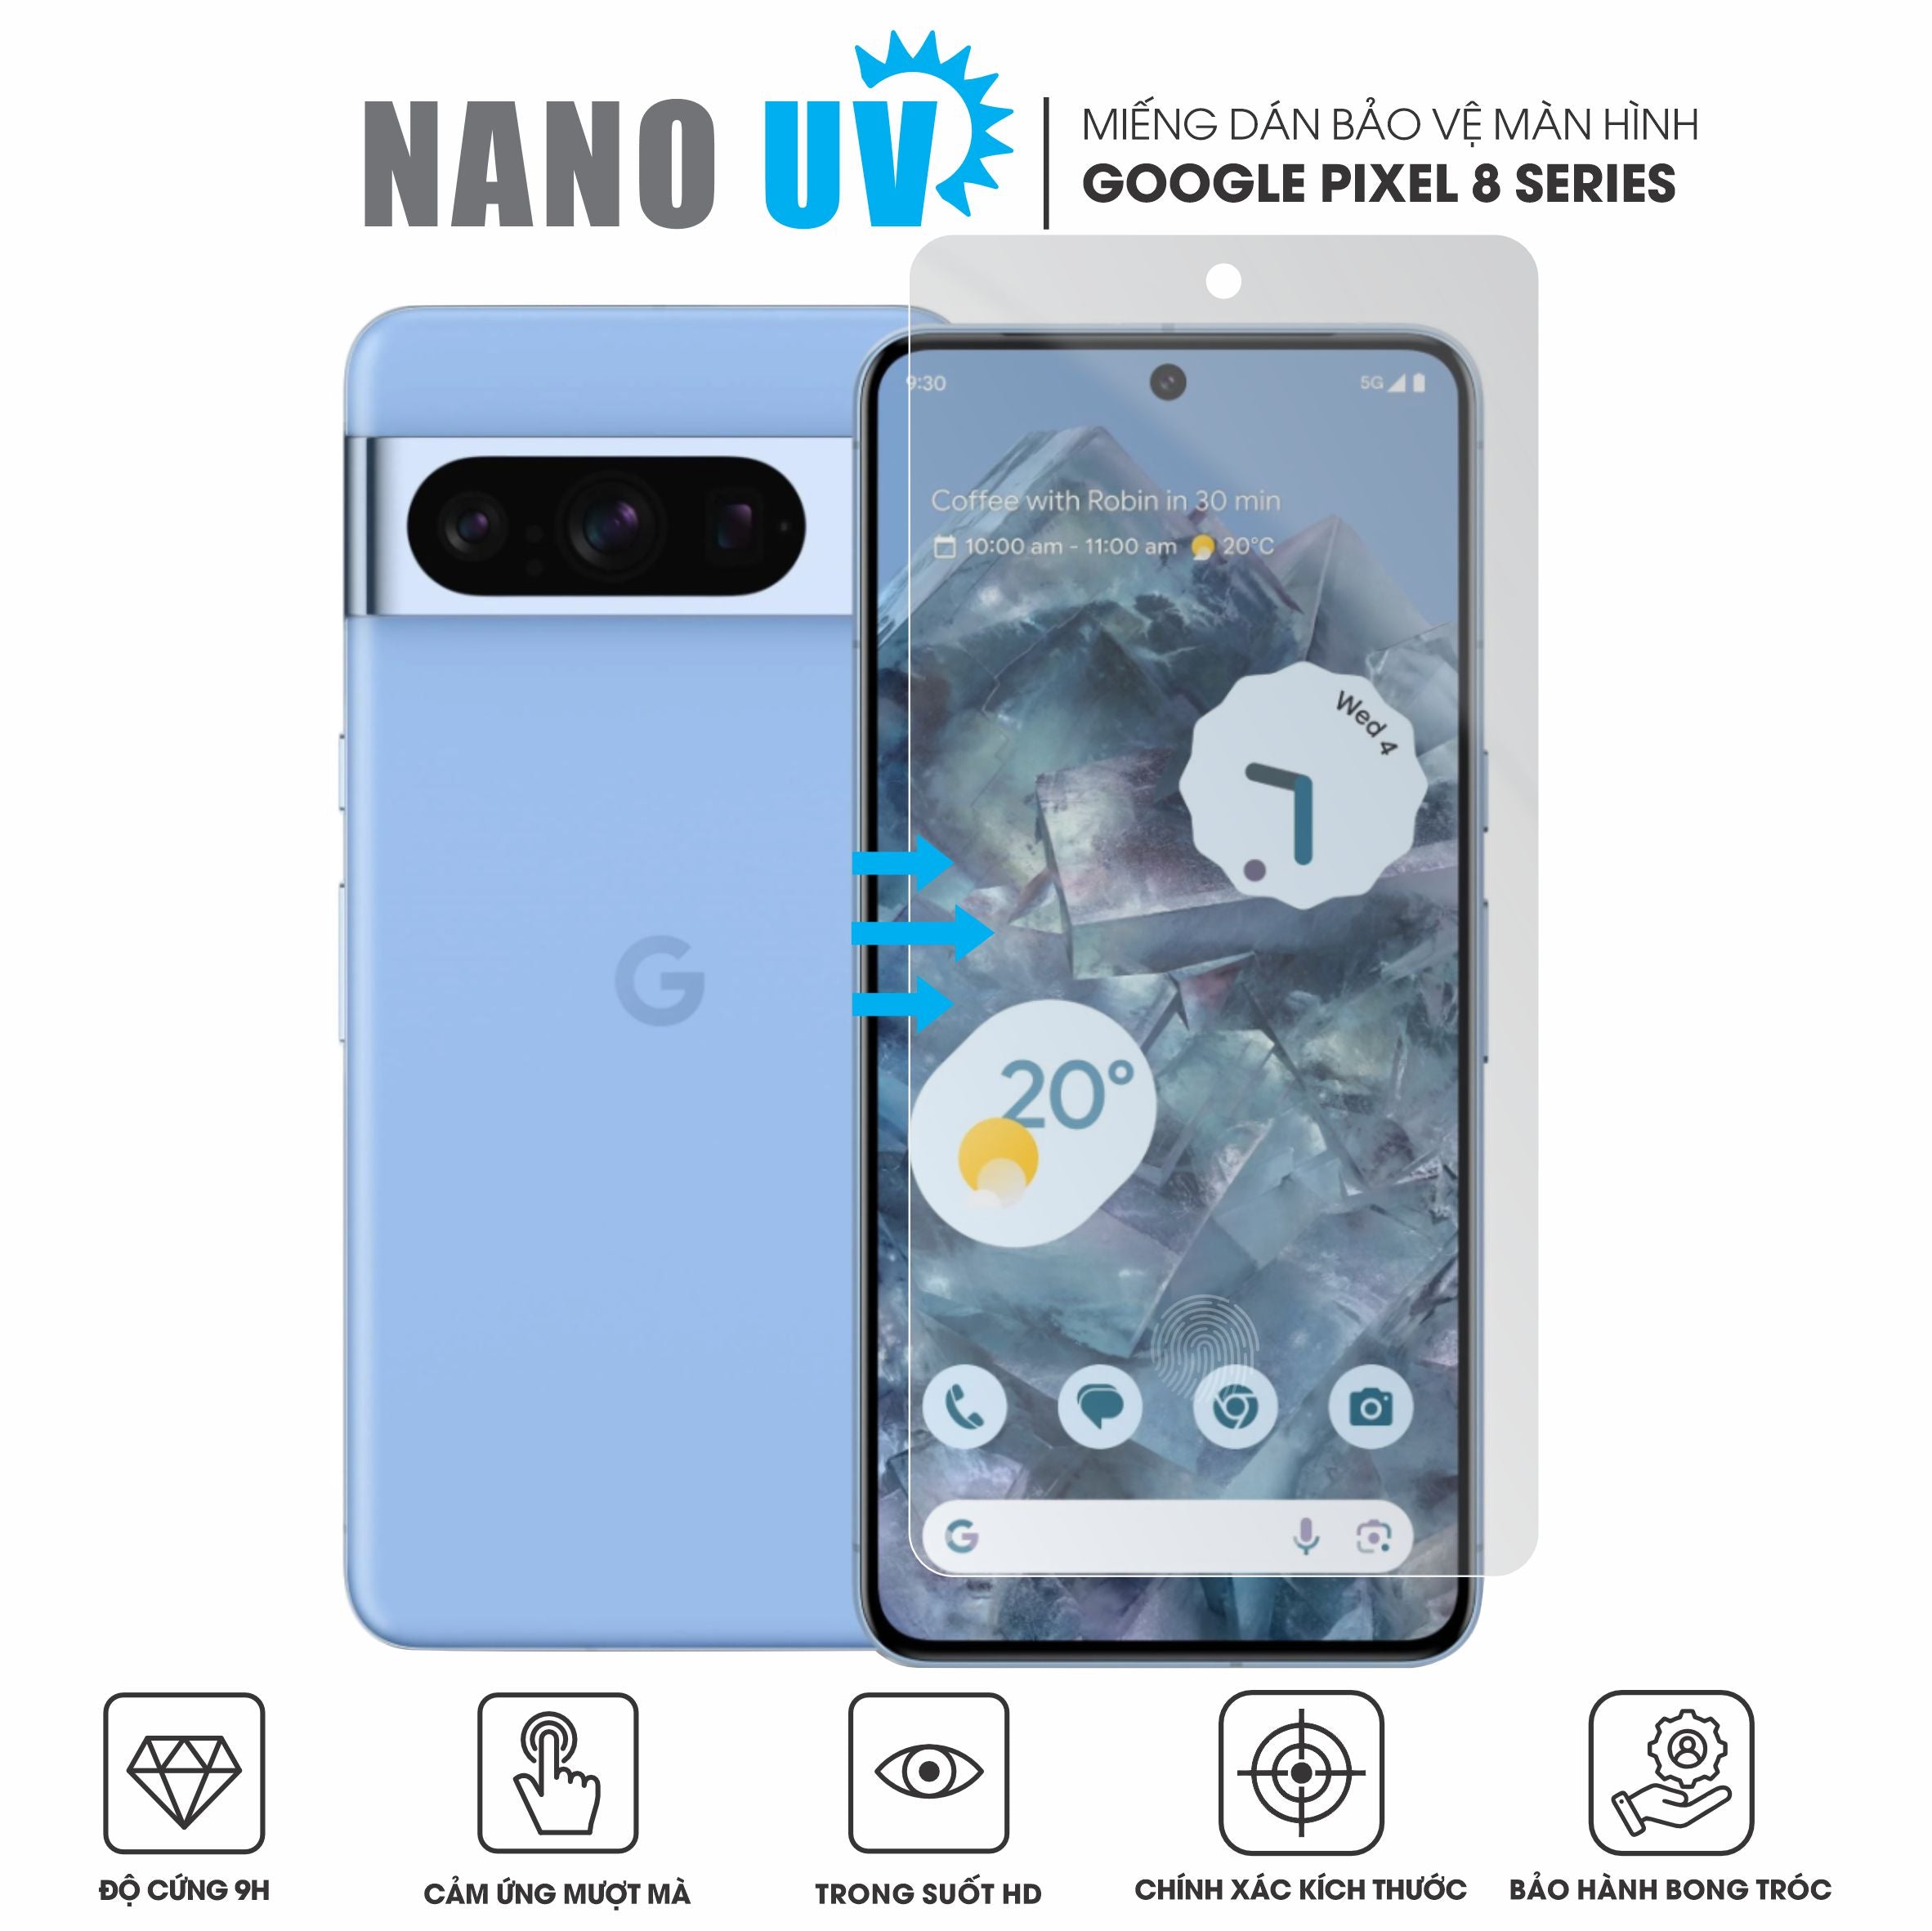 Miếng dán Nano UV màn hình Google Pixel 8 series